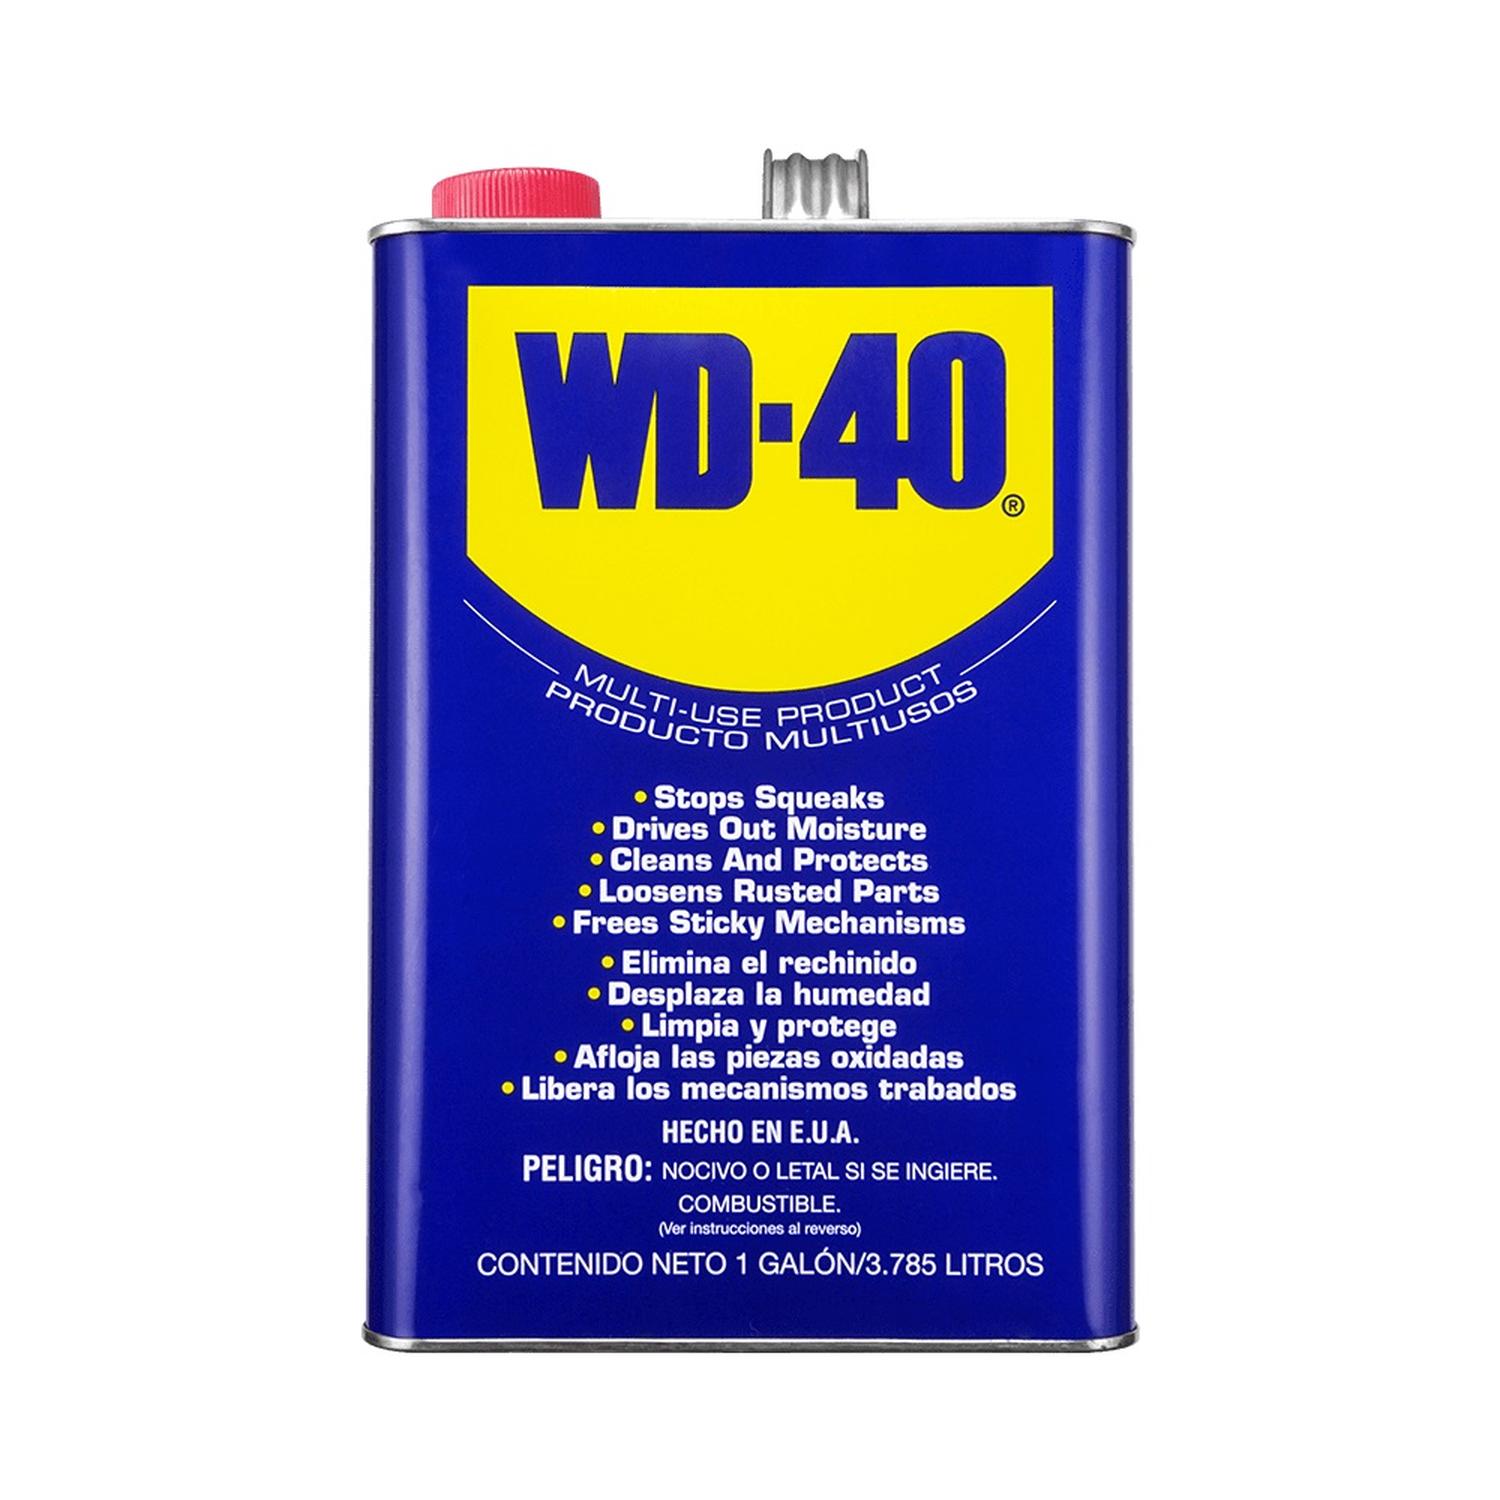 Wd-40 Lubricante Multiusos 1 Galón WD-40